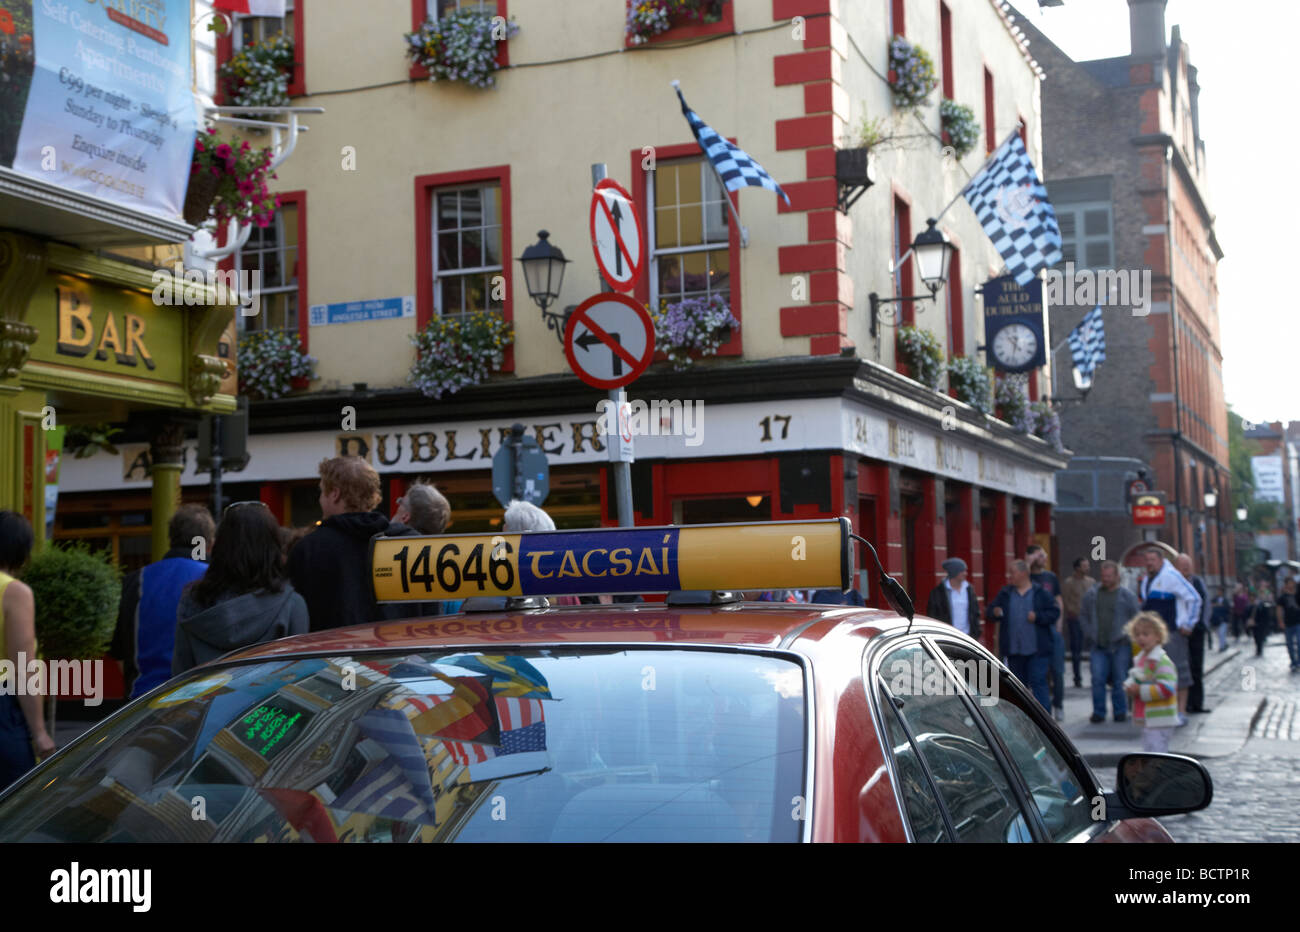 Taxi mit irische Schreibweise Tacsai auf Miete Board warten auf einen Tarif Outisde Kneipen in der Temple Bar in Dublin Stadt Stockfoto